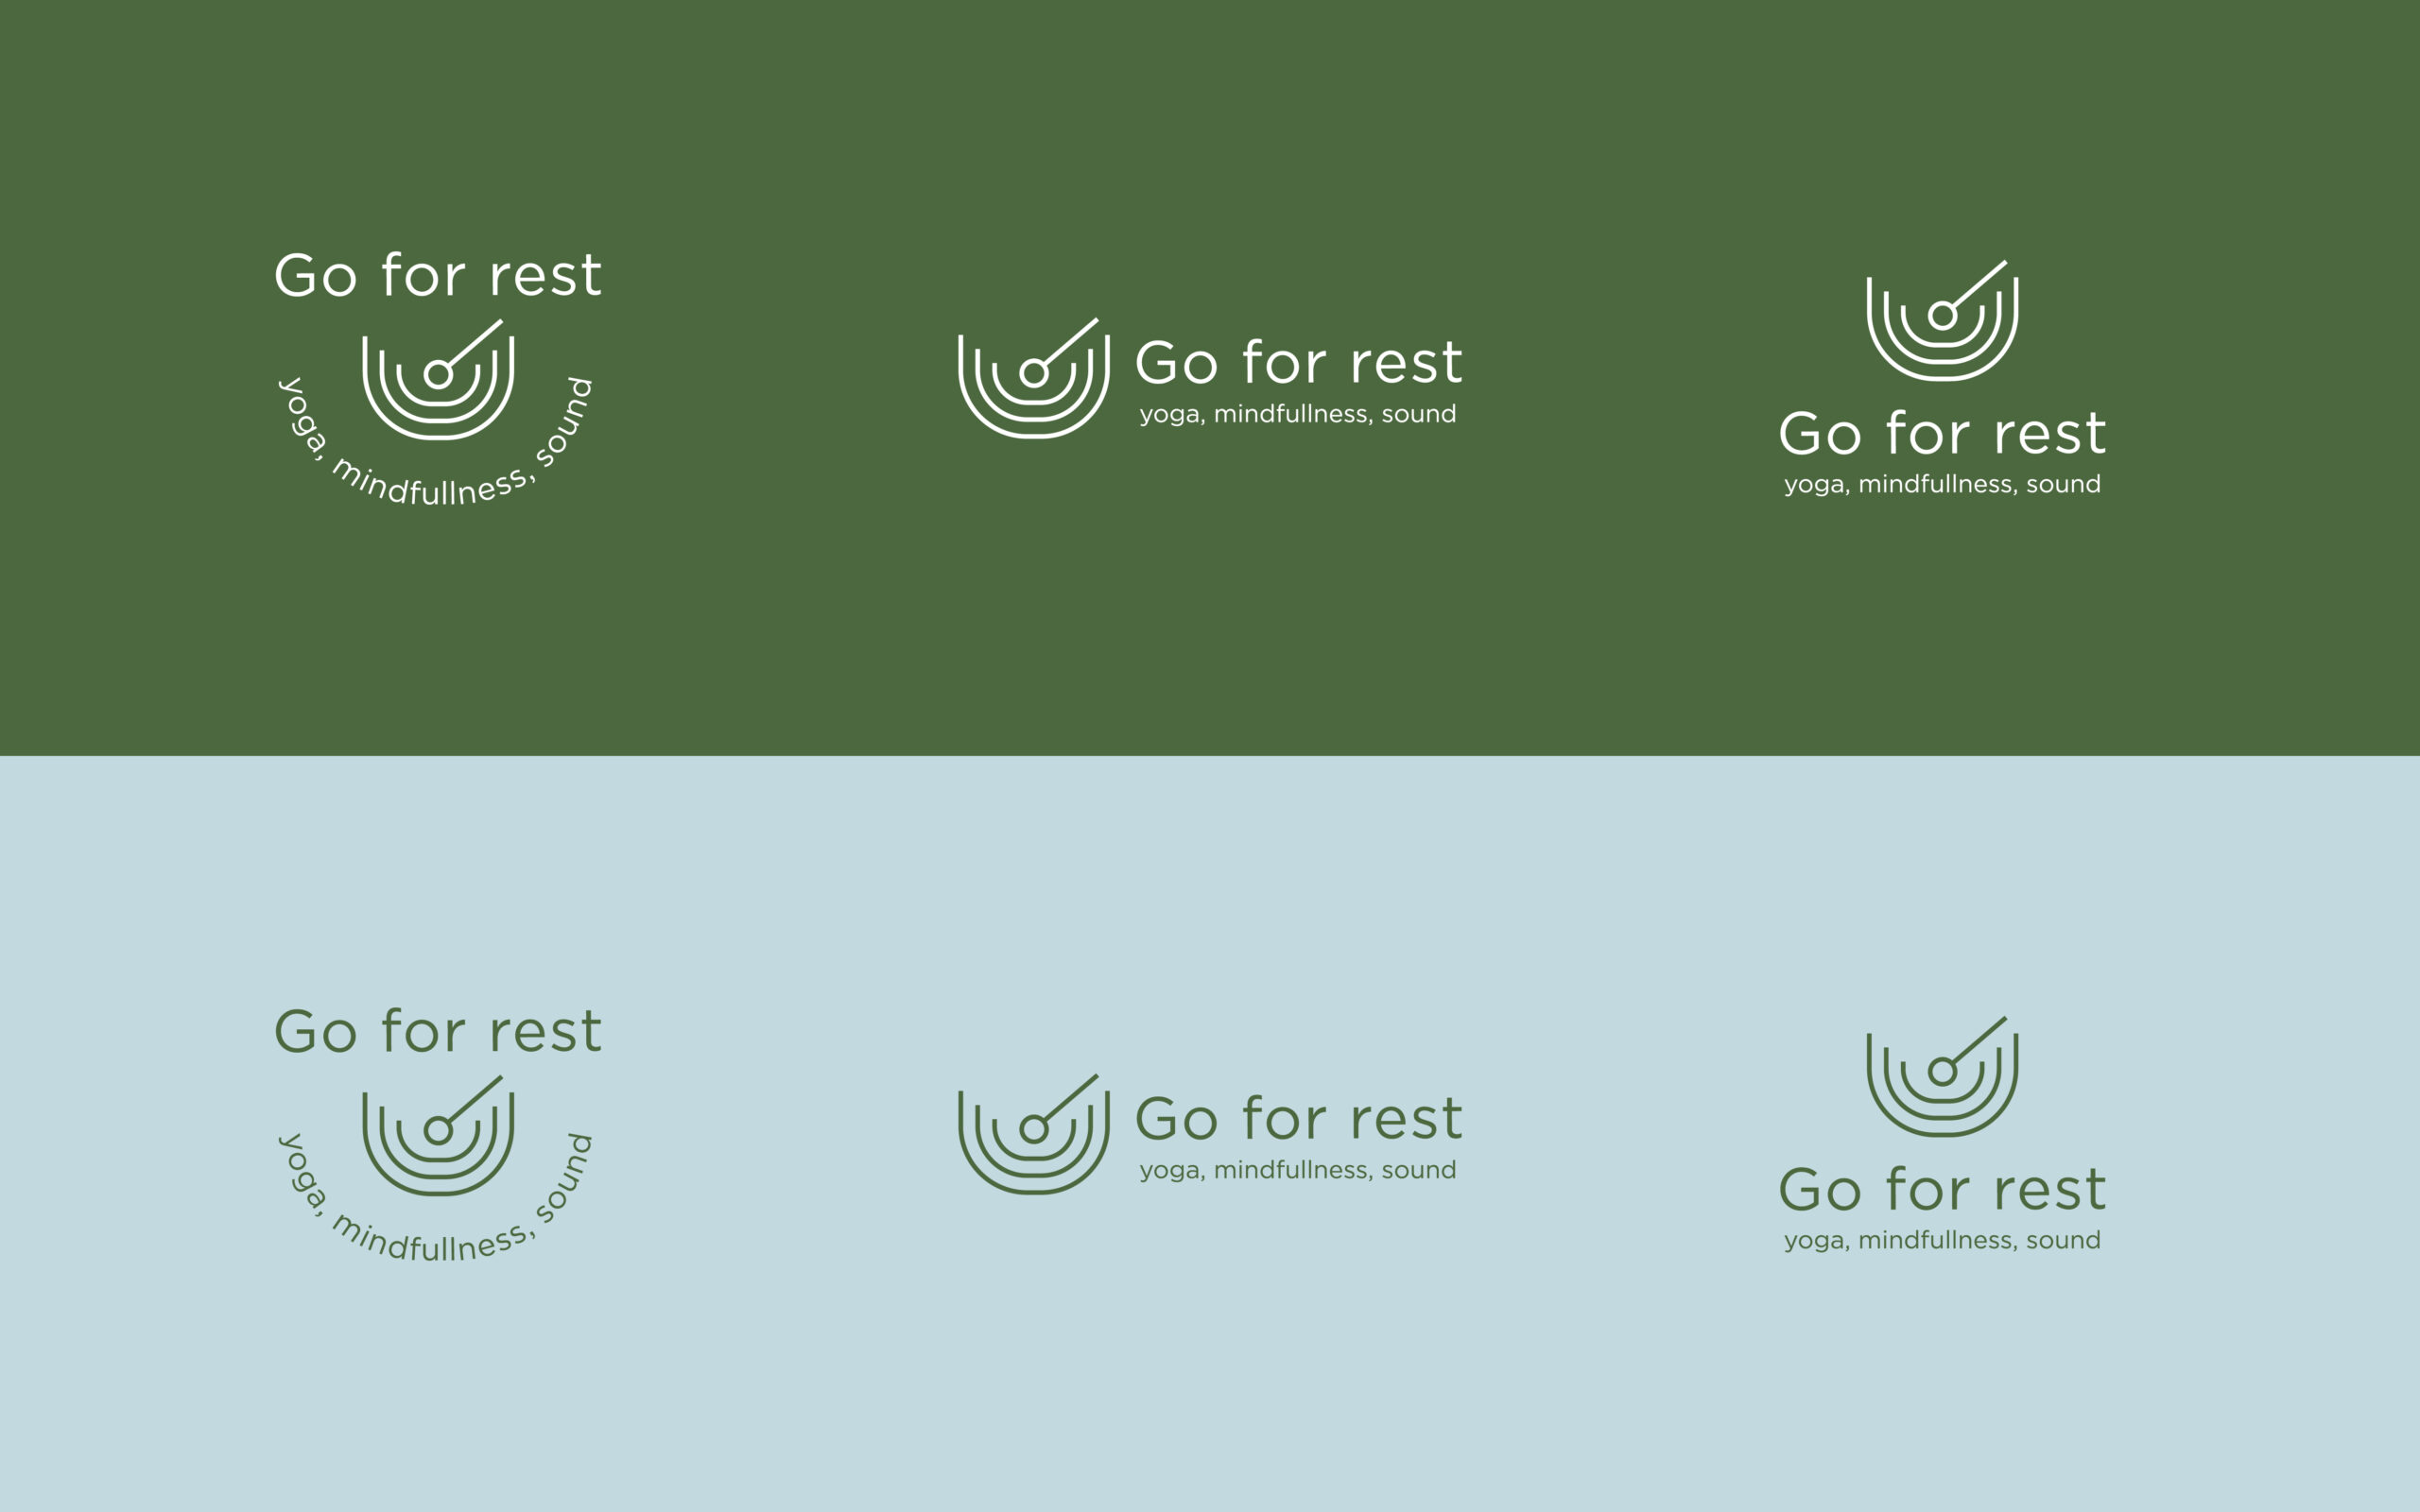 go for rest logo color variations